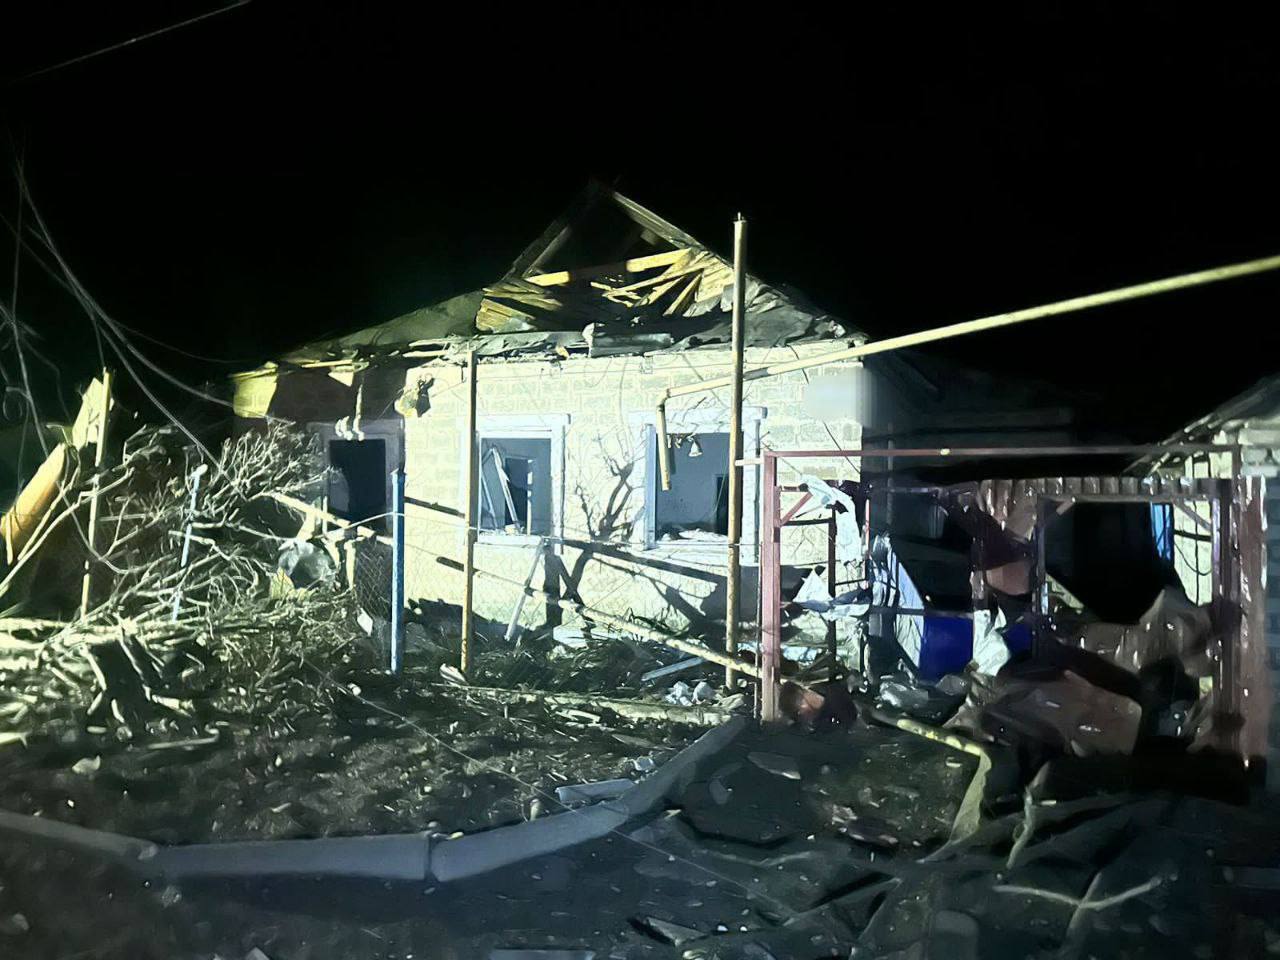 Оккупанты ударили по Селидово на Донетчине: повреждены десятки домов, есть пострадавшие. Фото